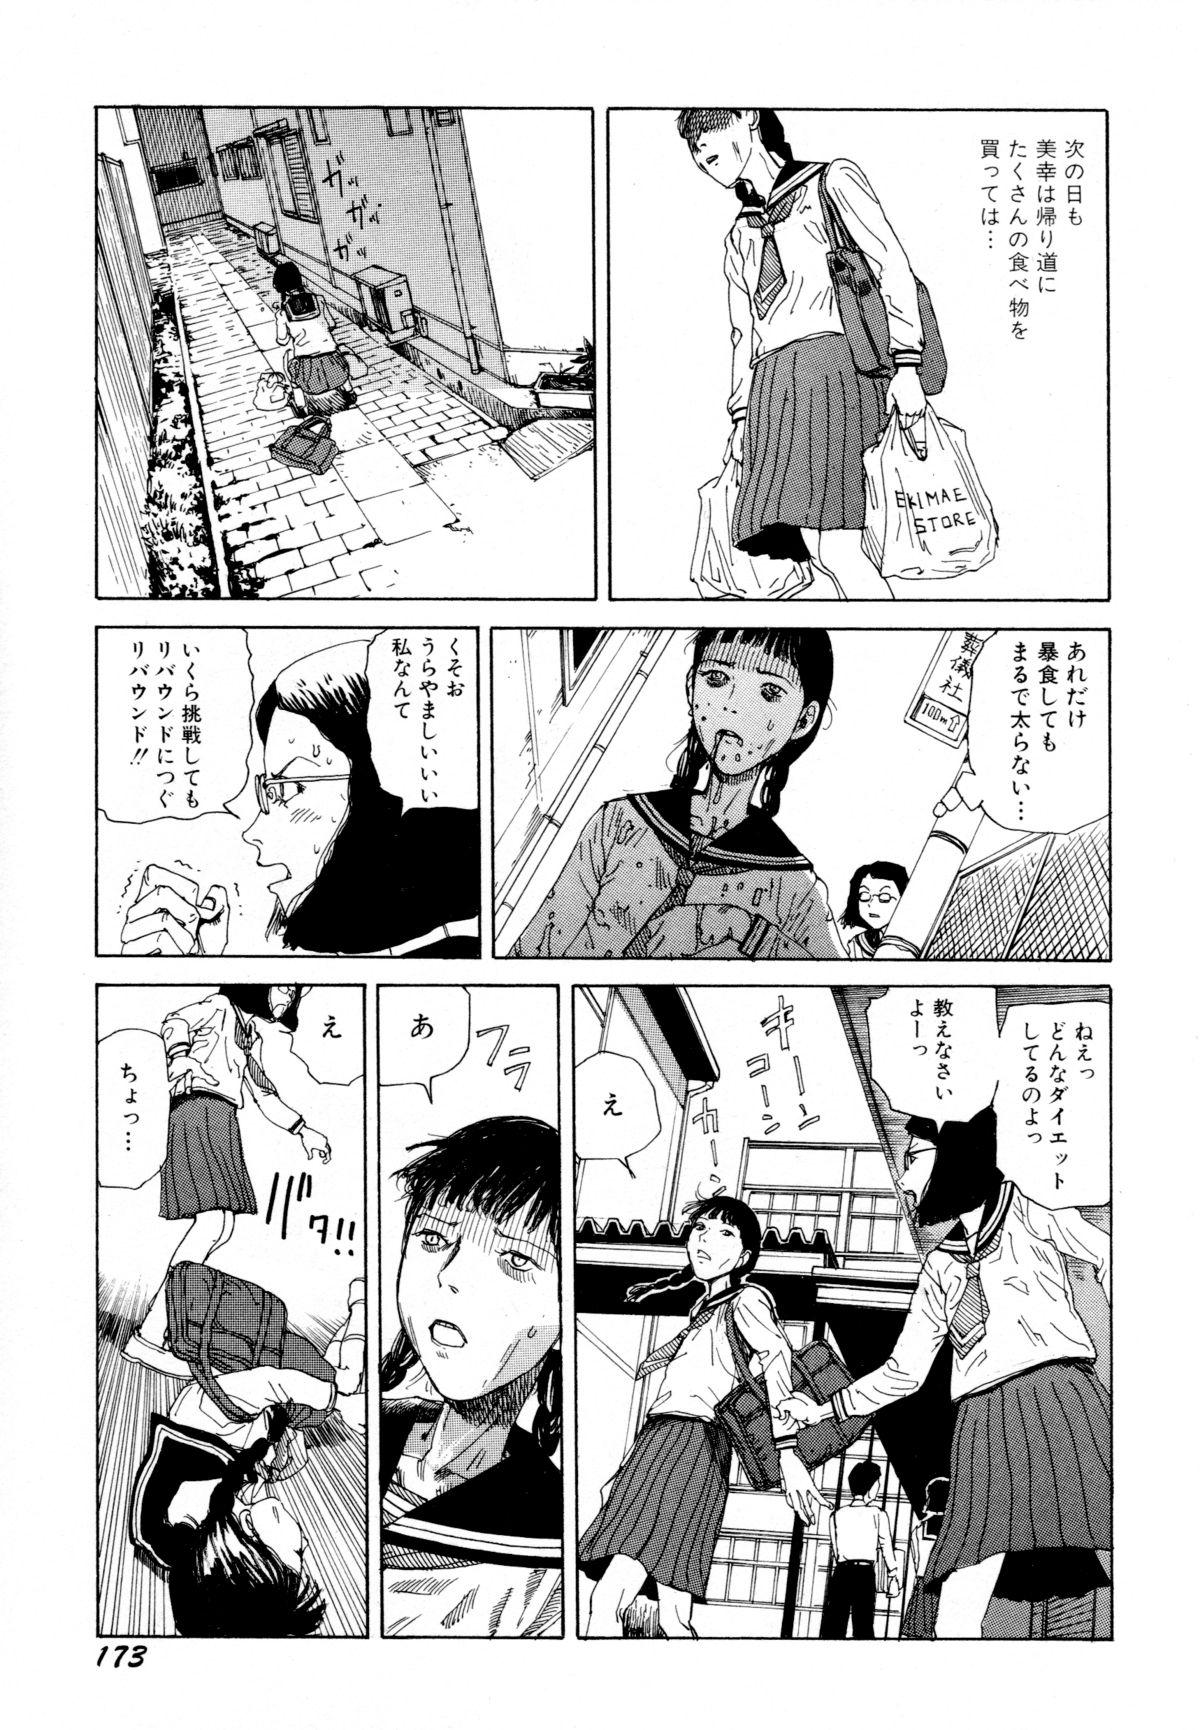 Arijigoku vs Barabara Shoujo - Antlion vs BaraBara Girl 174